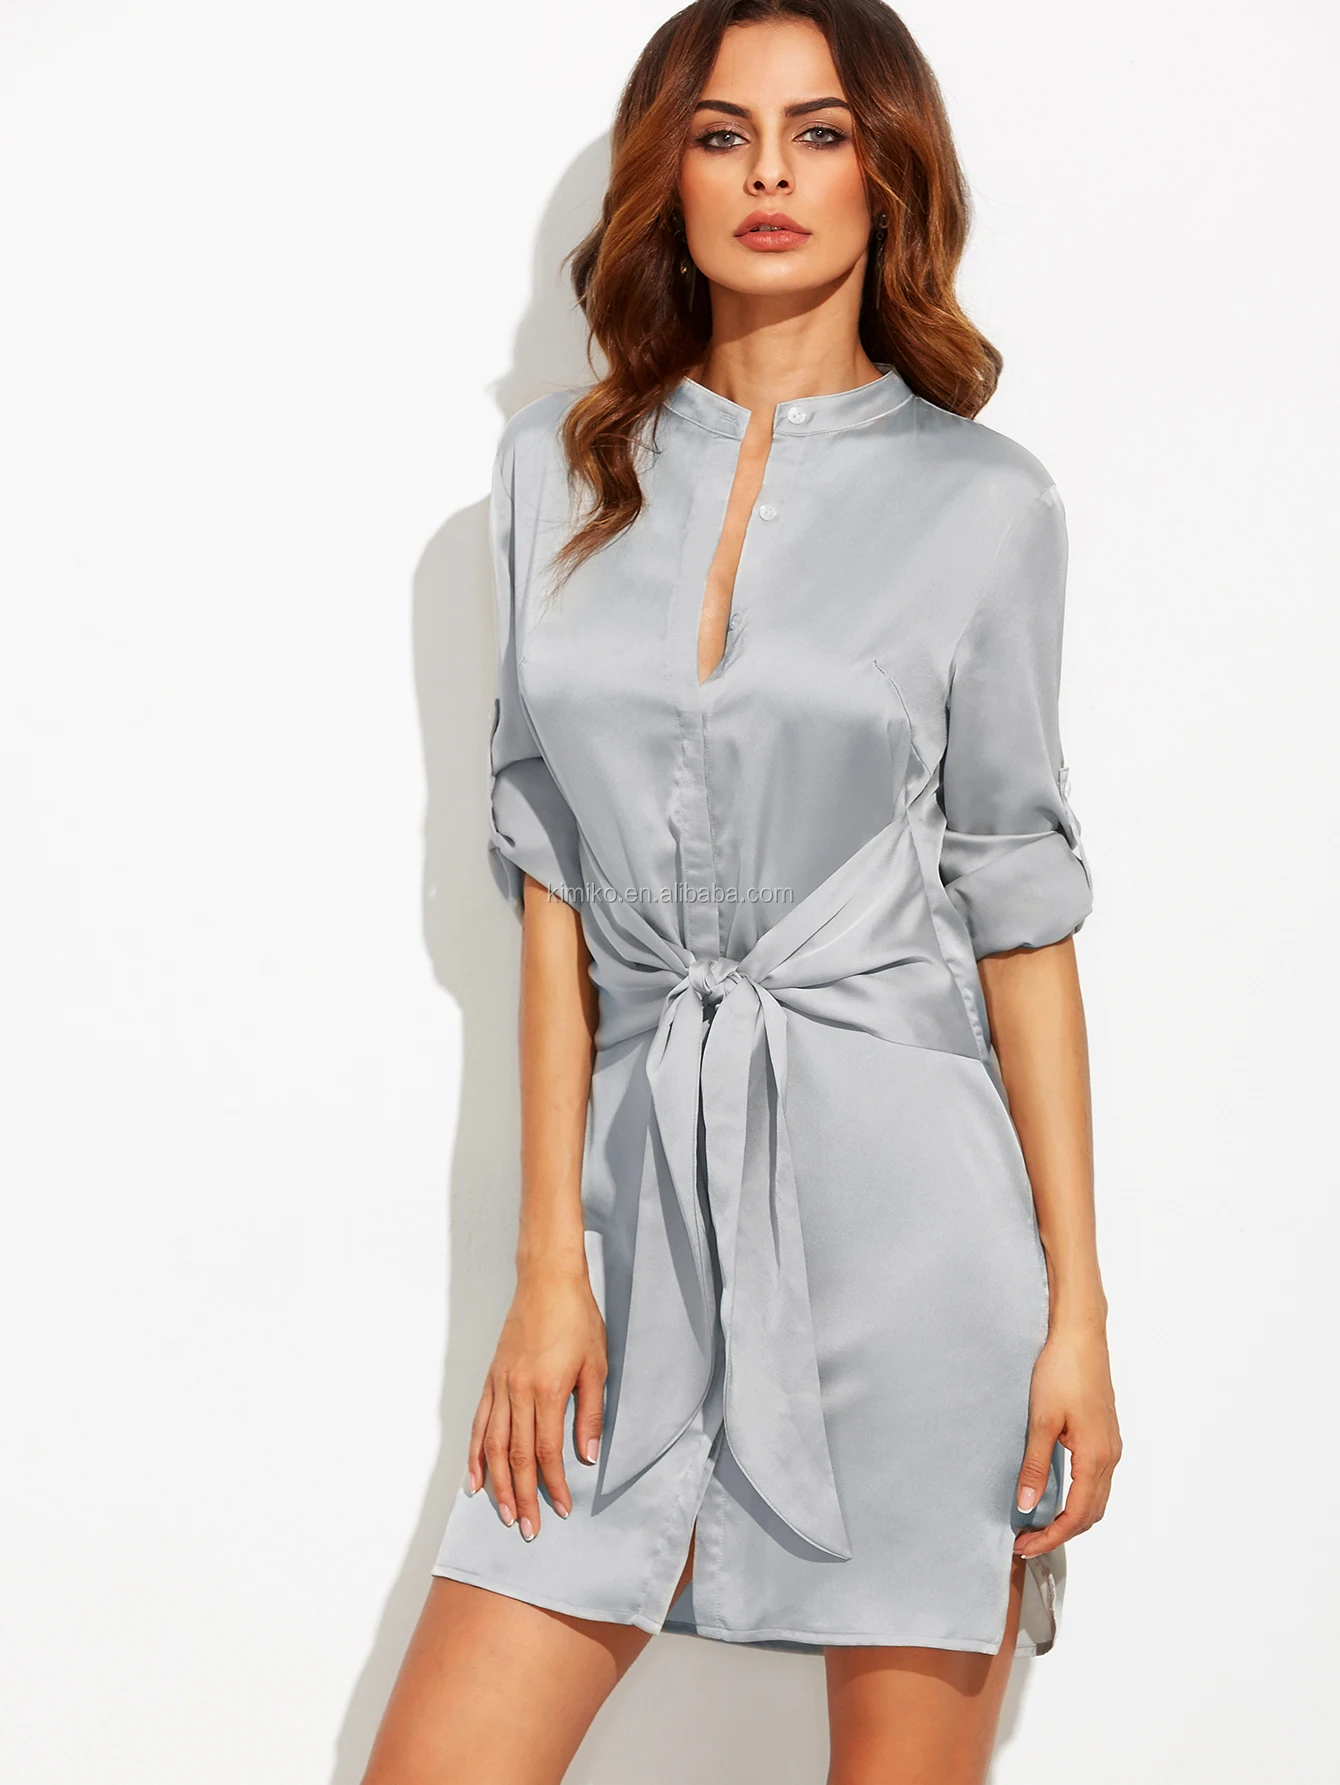 Women Silver Gray Satin Shirt Dress Button Up Long Sleeve Mini Dress ...